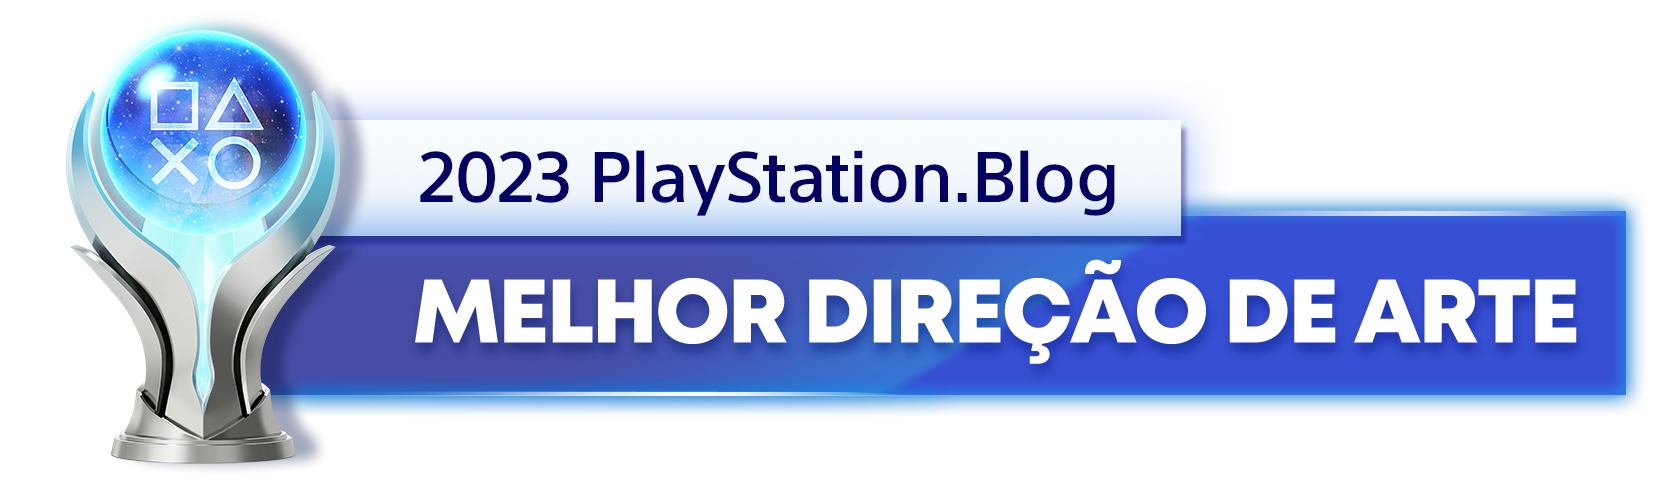  "Troféu de Platina para o vencedor da categoria Melhor Direção de Arte de 2023 do PlayStation Blog"